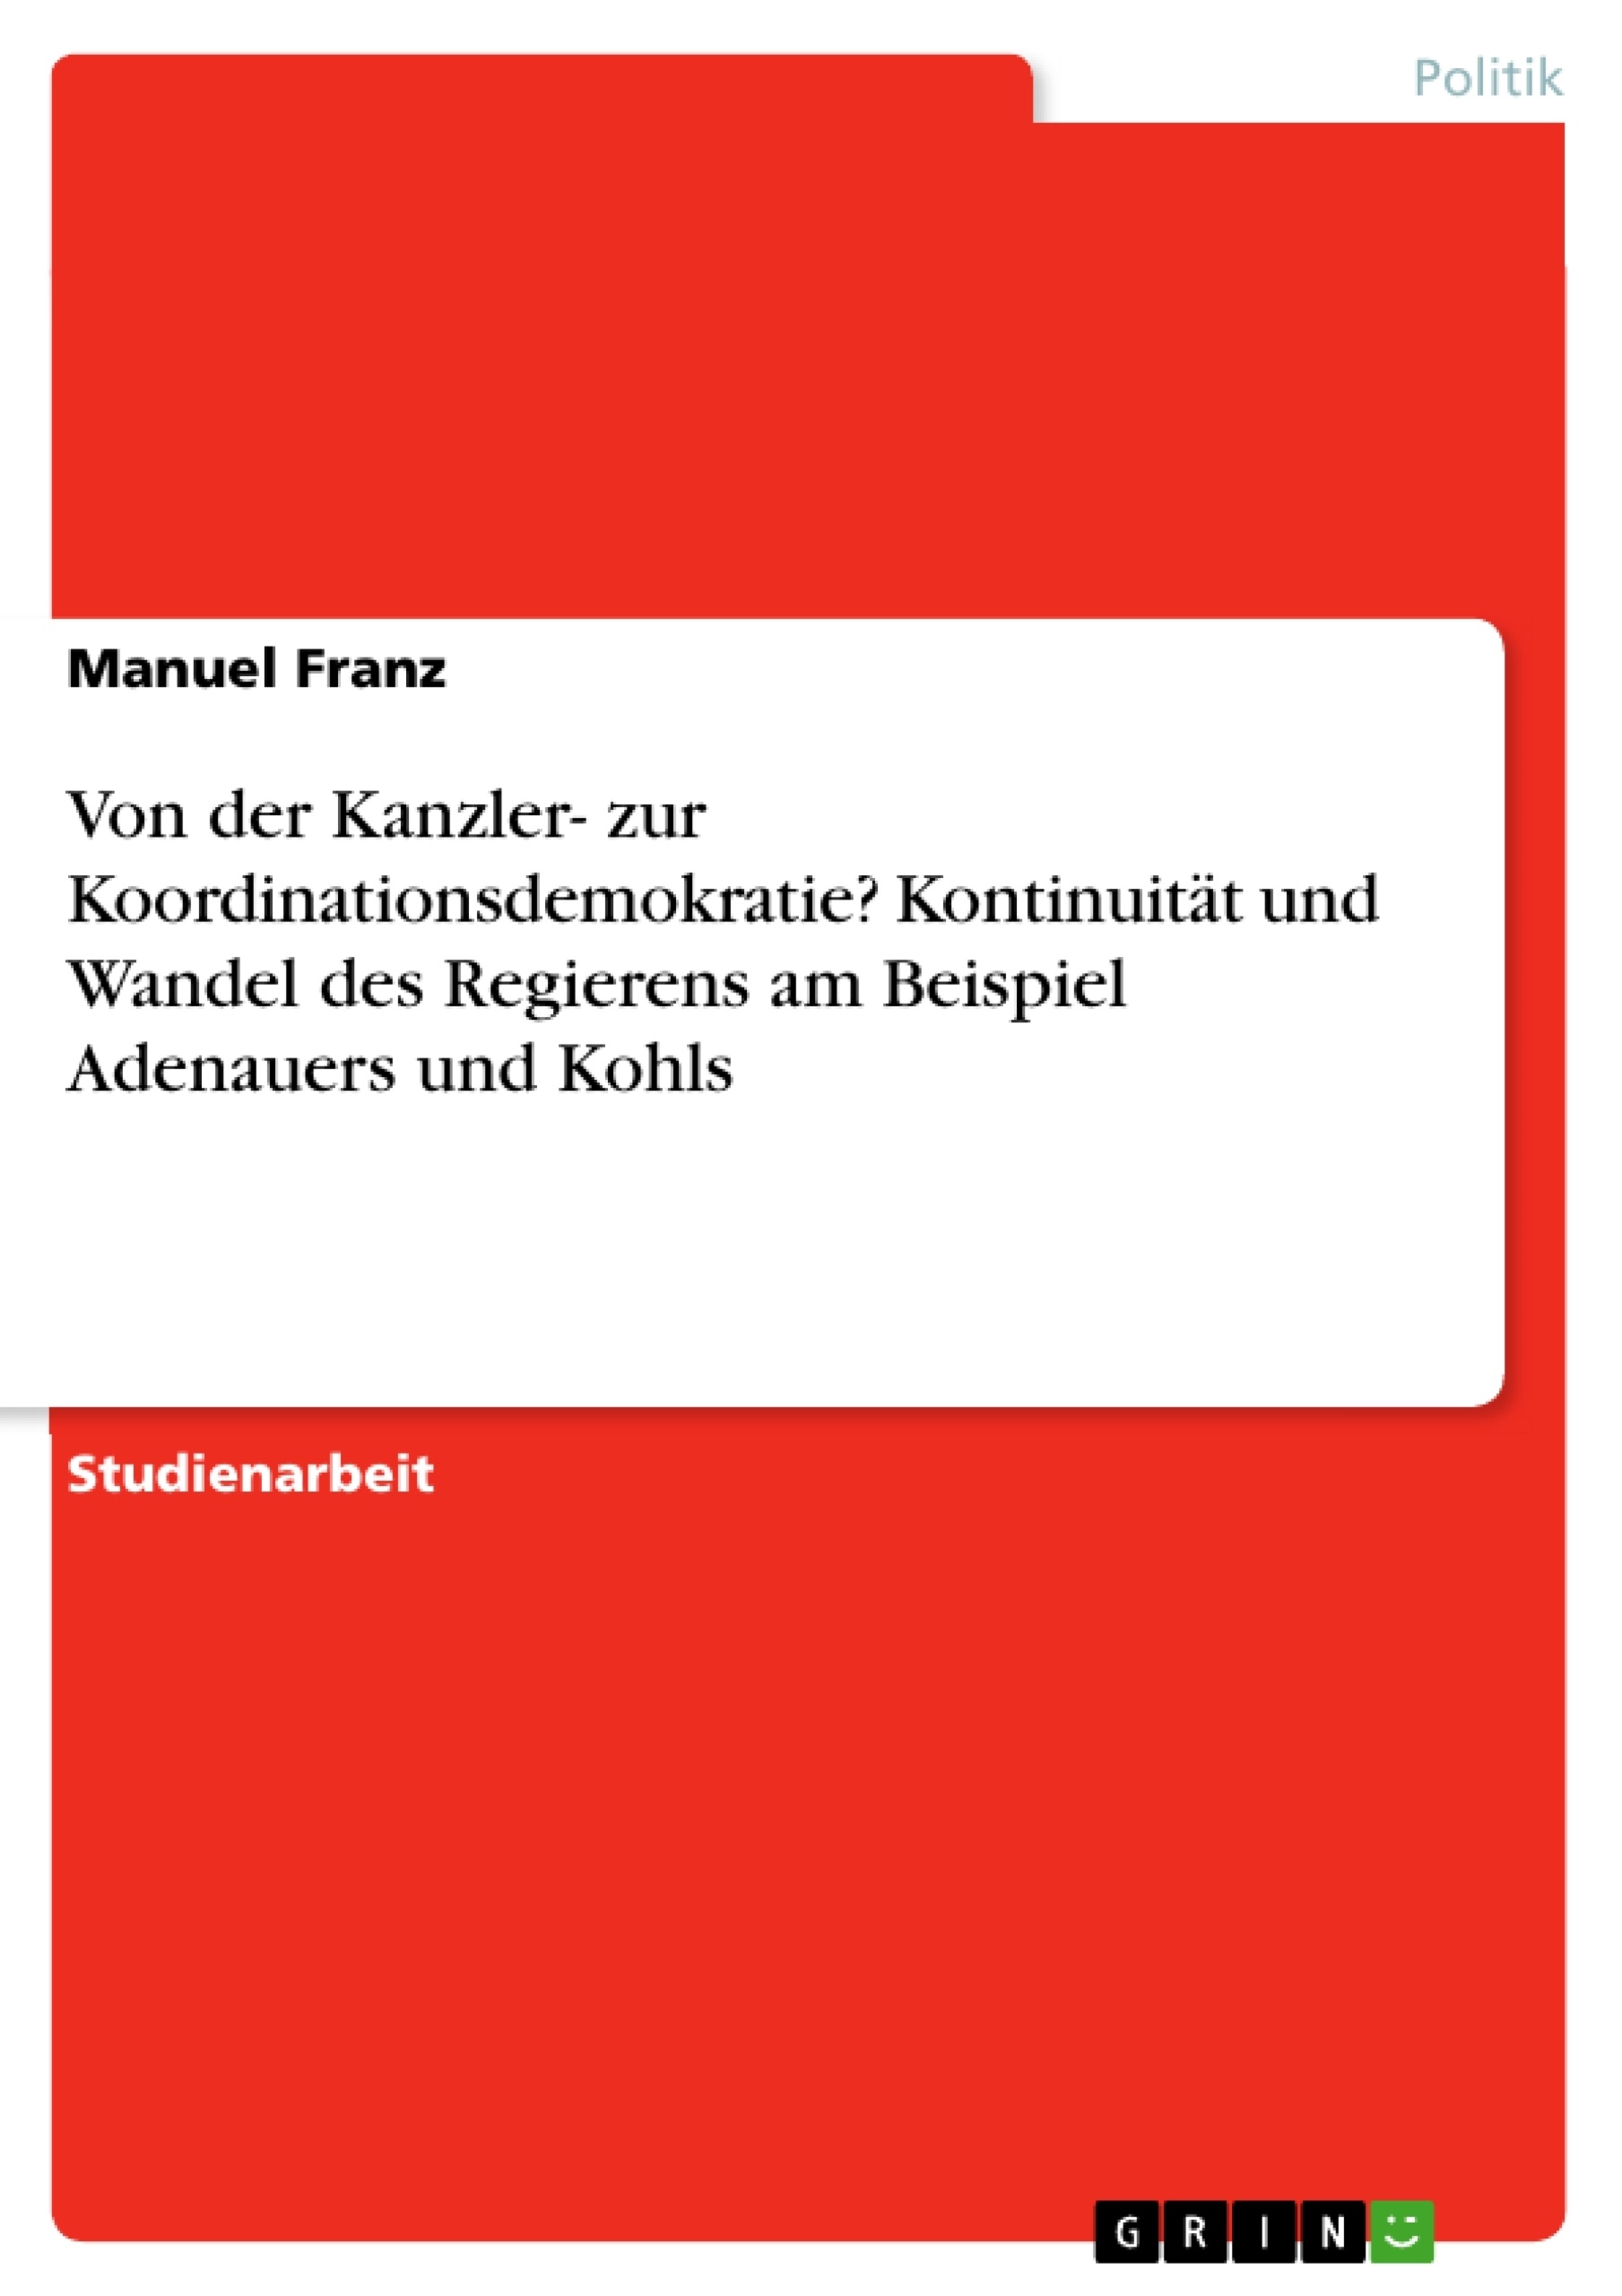 Título: Von der Kanzler- zur Koordinationsdemokratie? Kontinuität und Wandel des Regierens am Beispiel Adenauers und Kohls